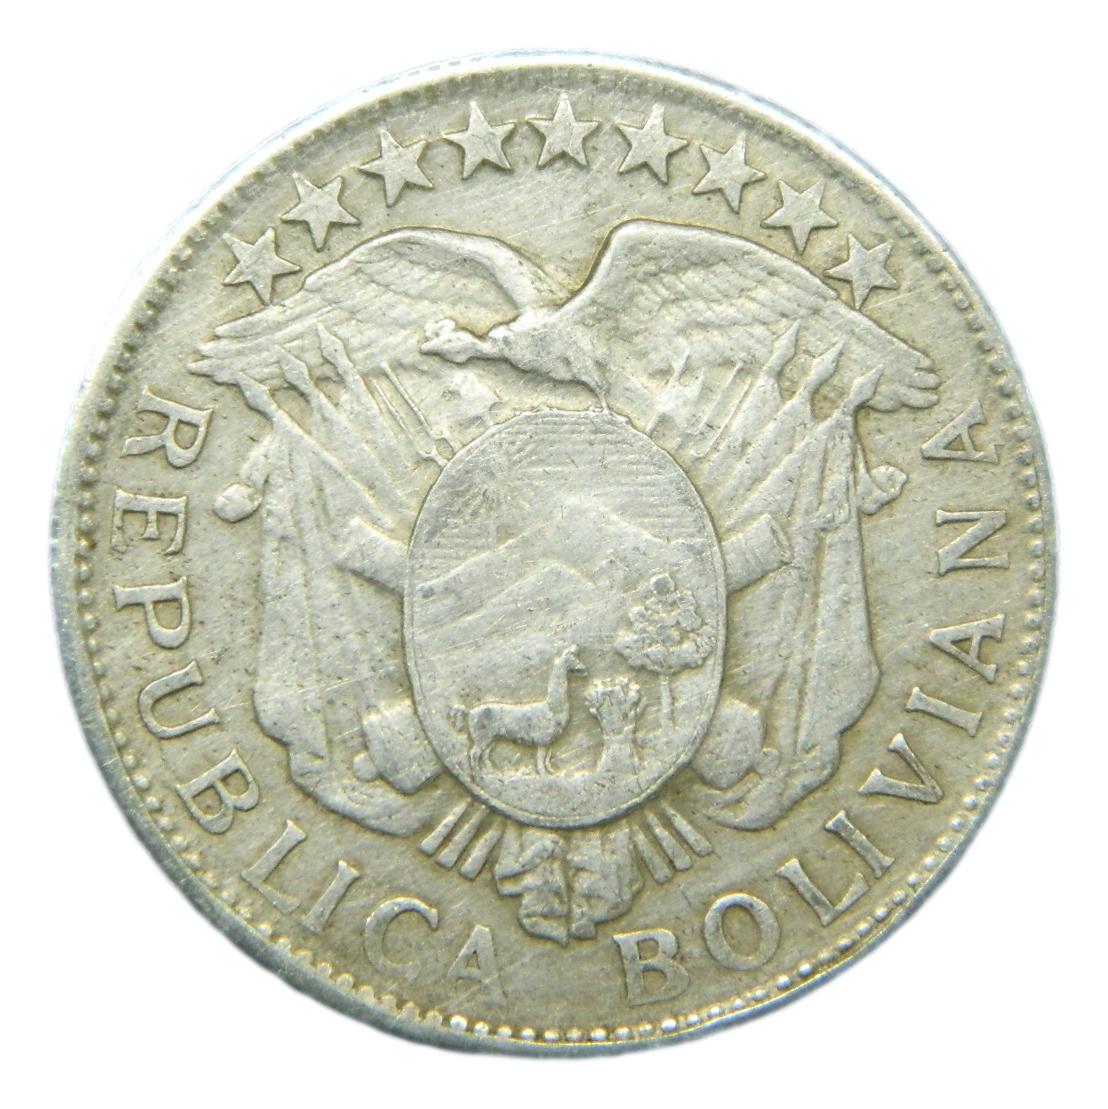 1905 MM - BOLIVIA - 50 CENTAVOS - 1/2 BOLIVIANO